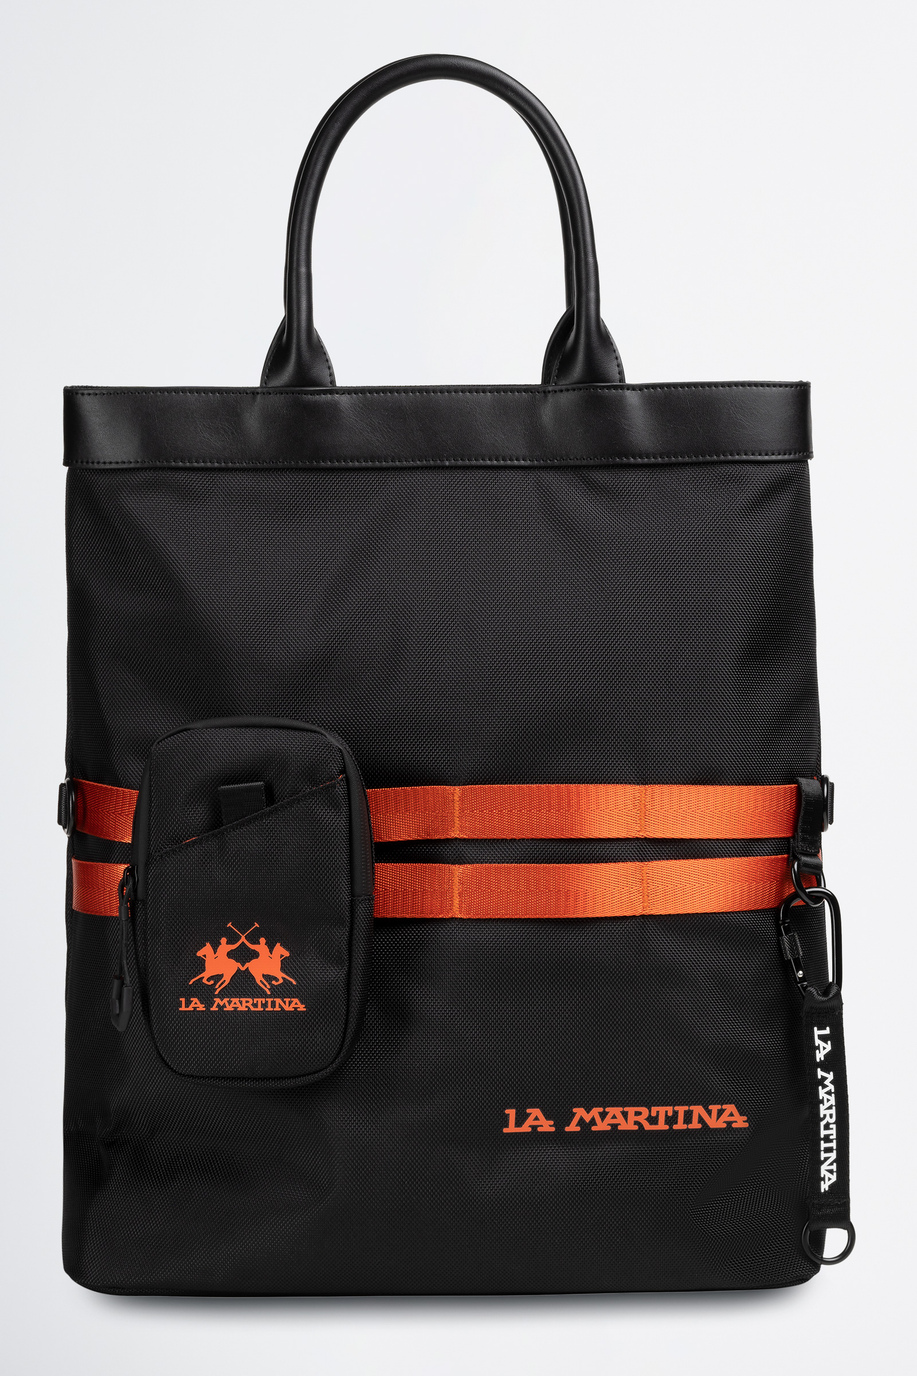 Herren Tasche aus synthetischem Gewebe - Kleine Geschenke für ihn | La Martina - Official Online Shop